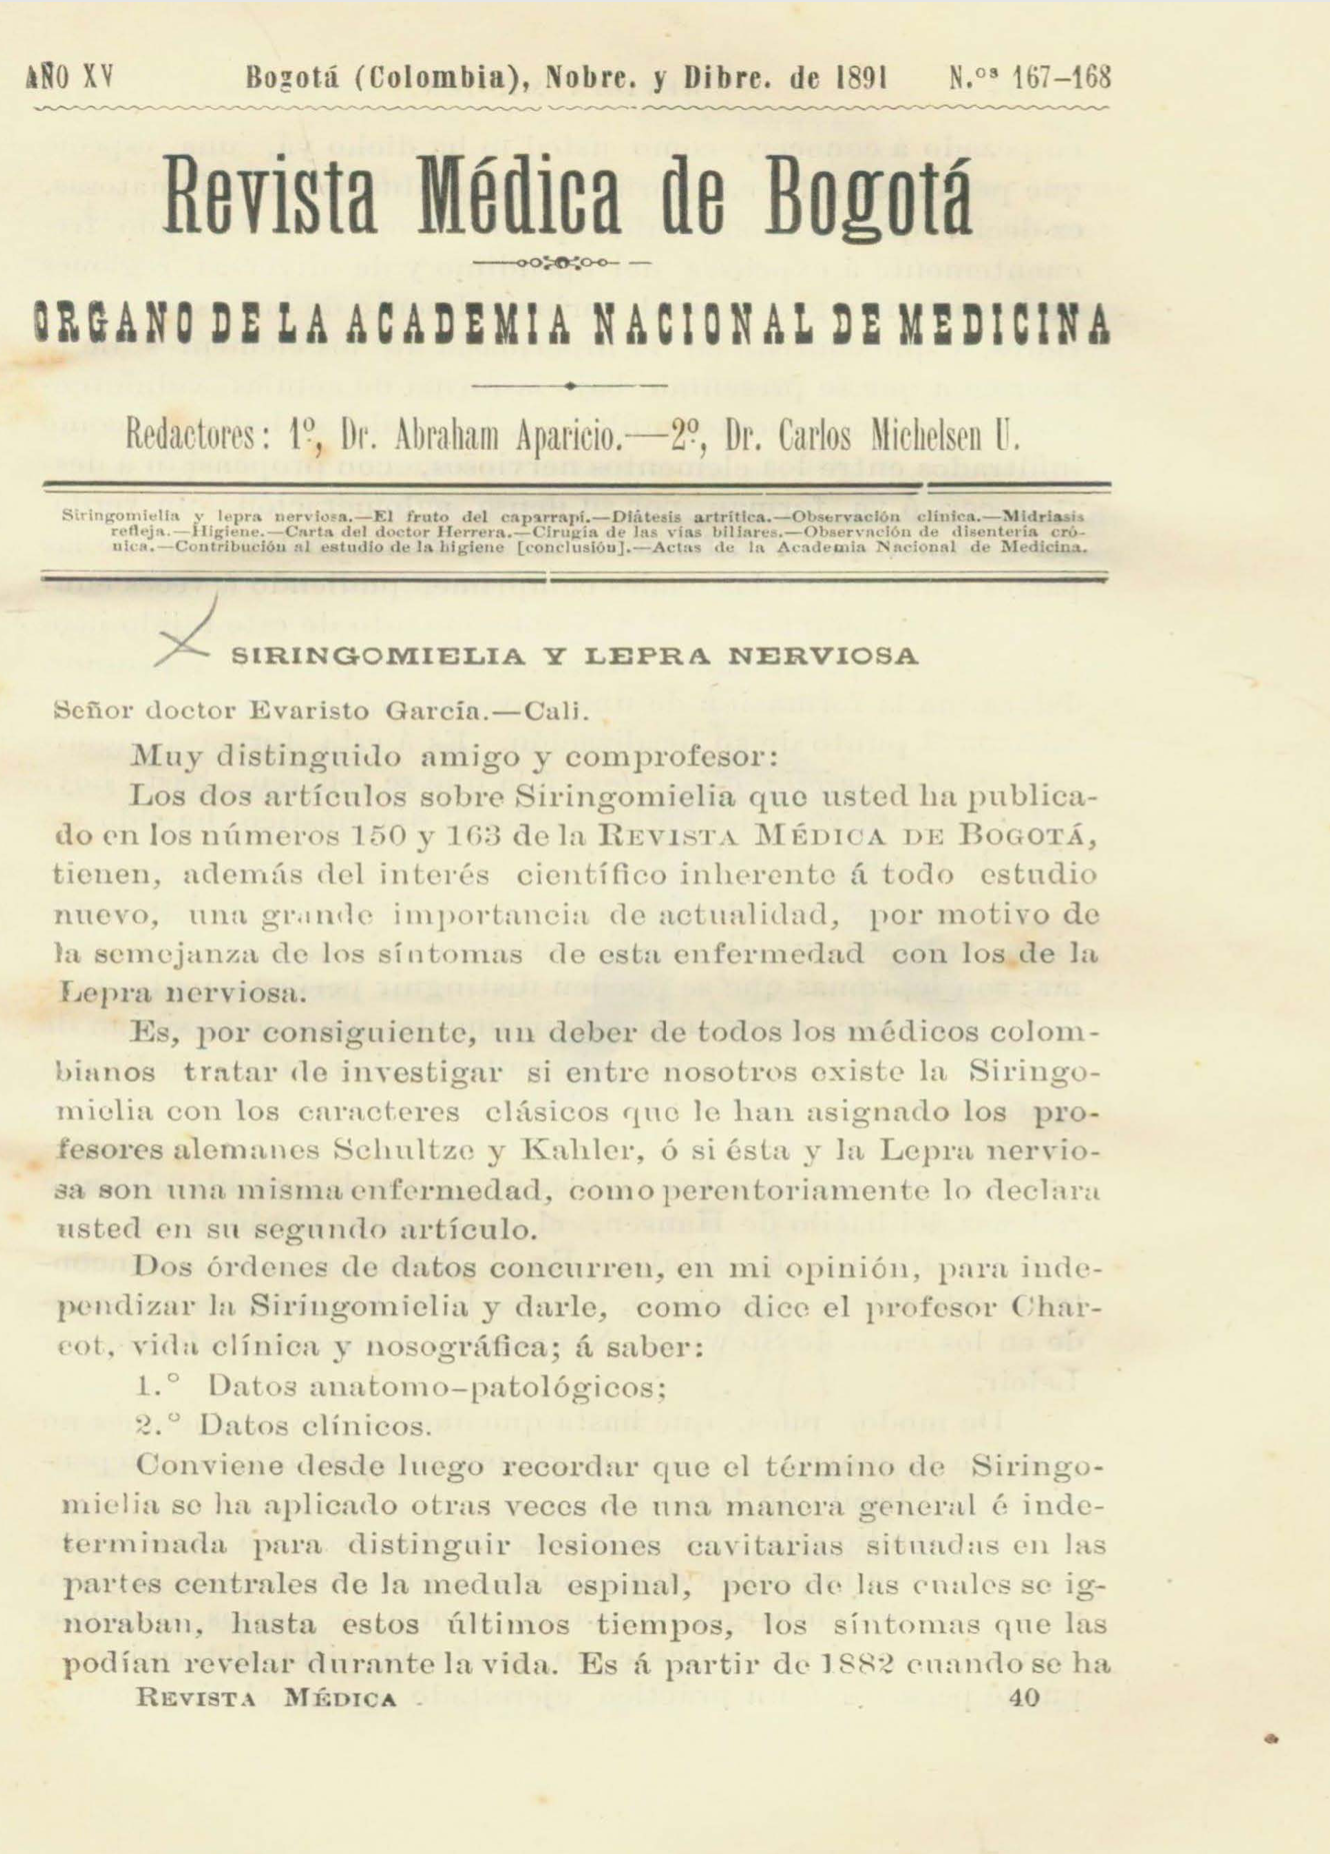 					Ver Vol. 15 Núm. 167-168 (1891): Revista Médica de Bogotá. Serie 15. Noviembre - Diciembre de 1891. Núm. 167-168
				